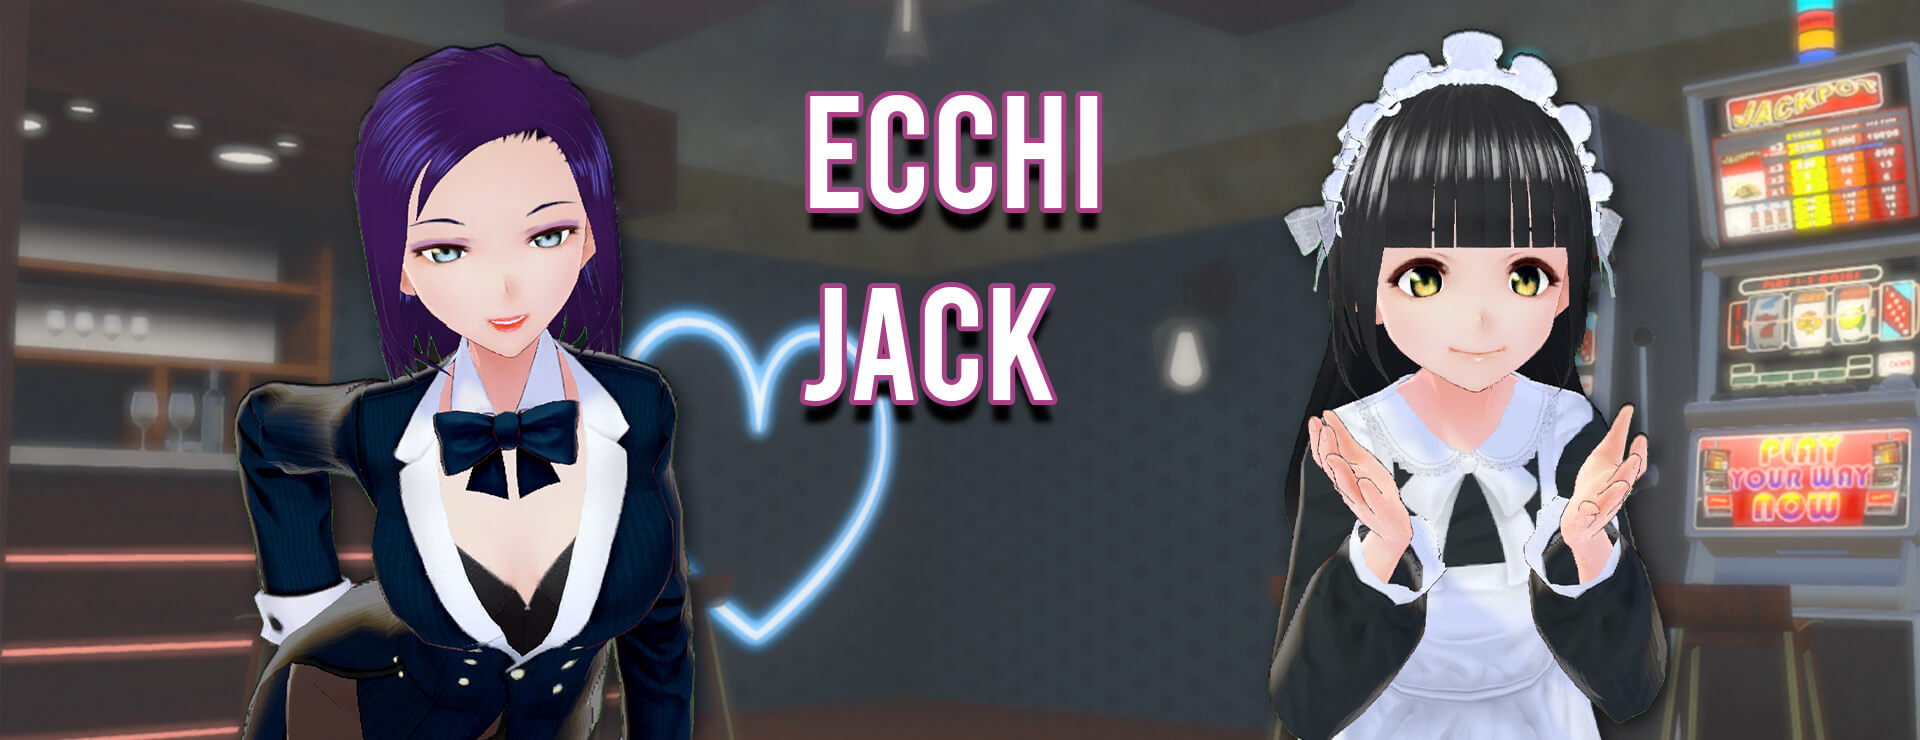 Ecchi Jack - Casual Game